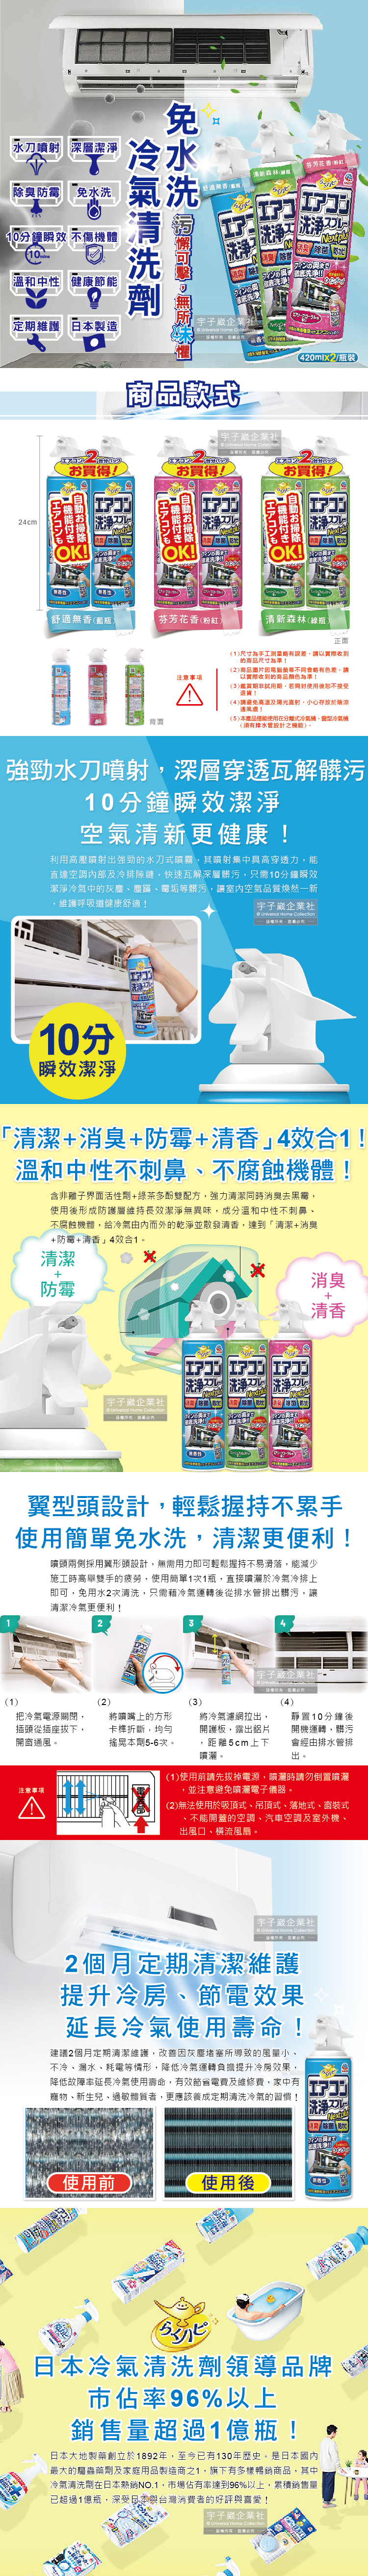 (清潔-冷氣)日本興家安速-免水洗冷氣清洗劑介紹圖